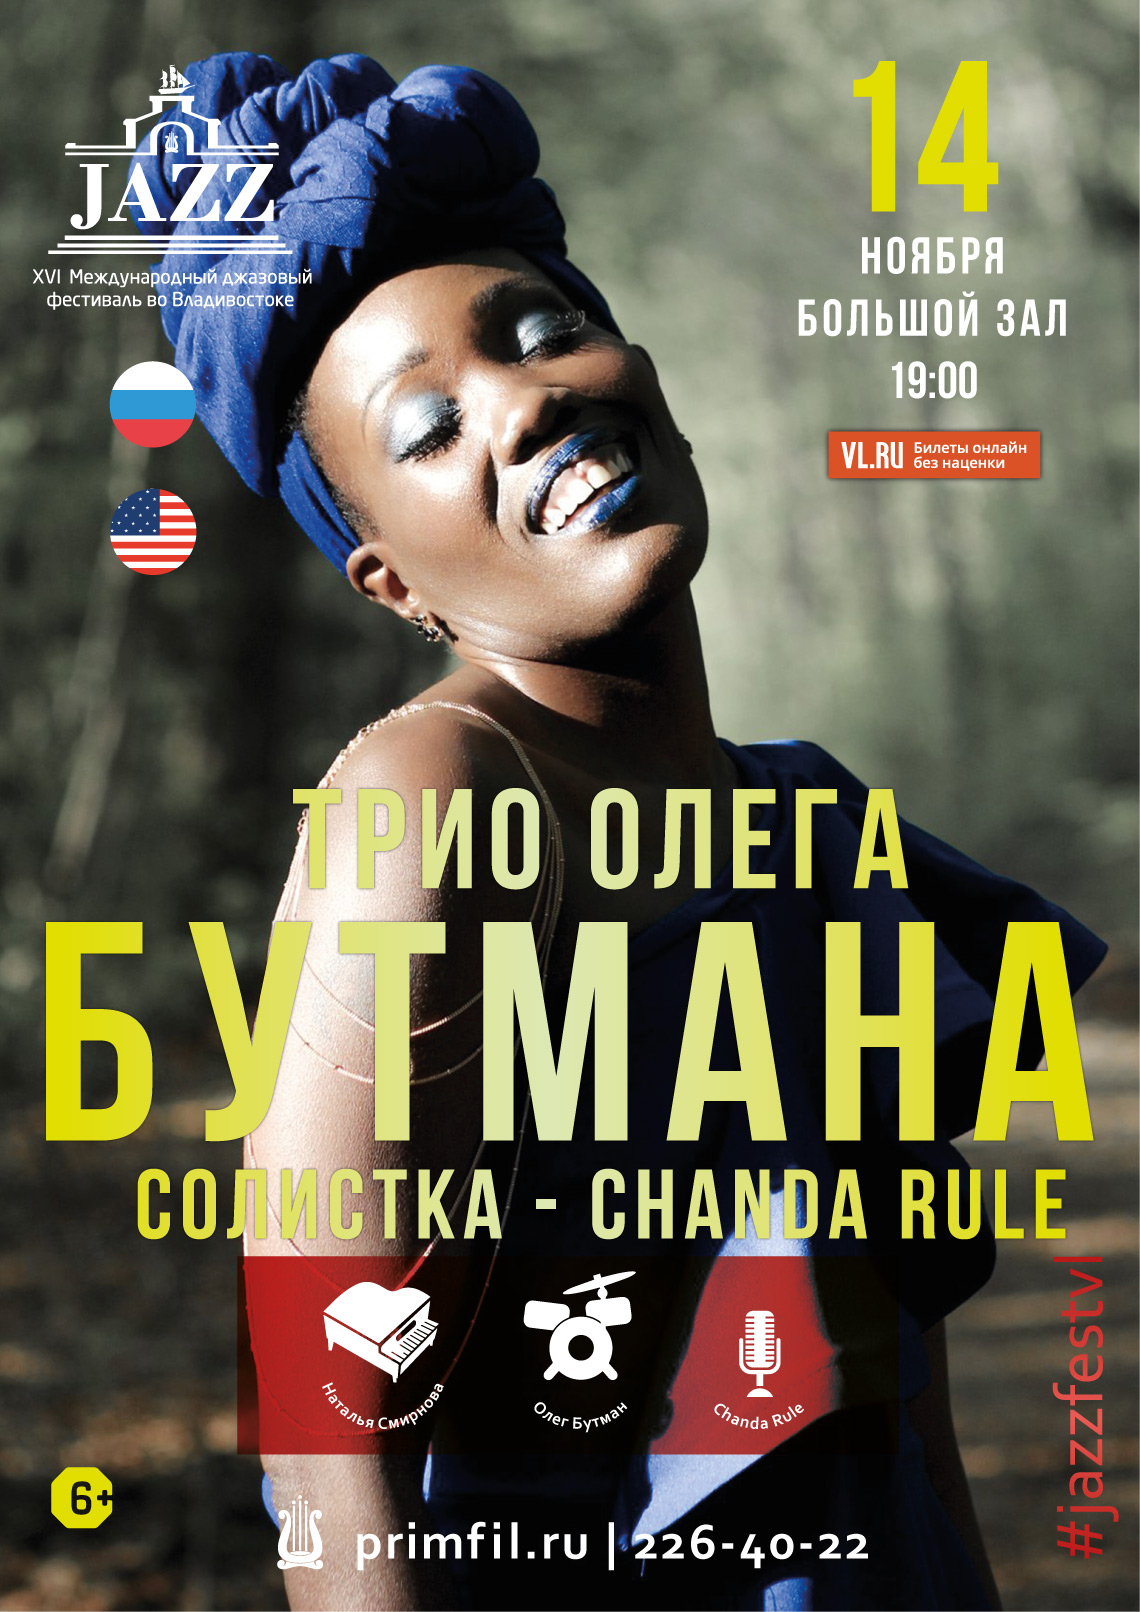 14 ноября XVI Международный джазовый фестиваль  CHANDA RULE и трио Олега Бутмана